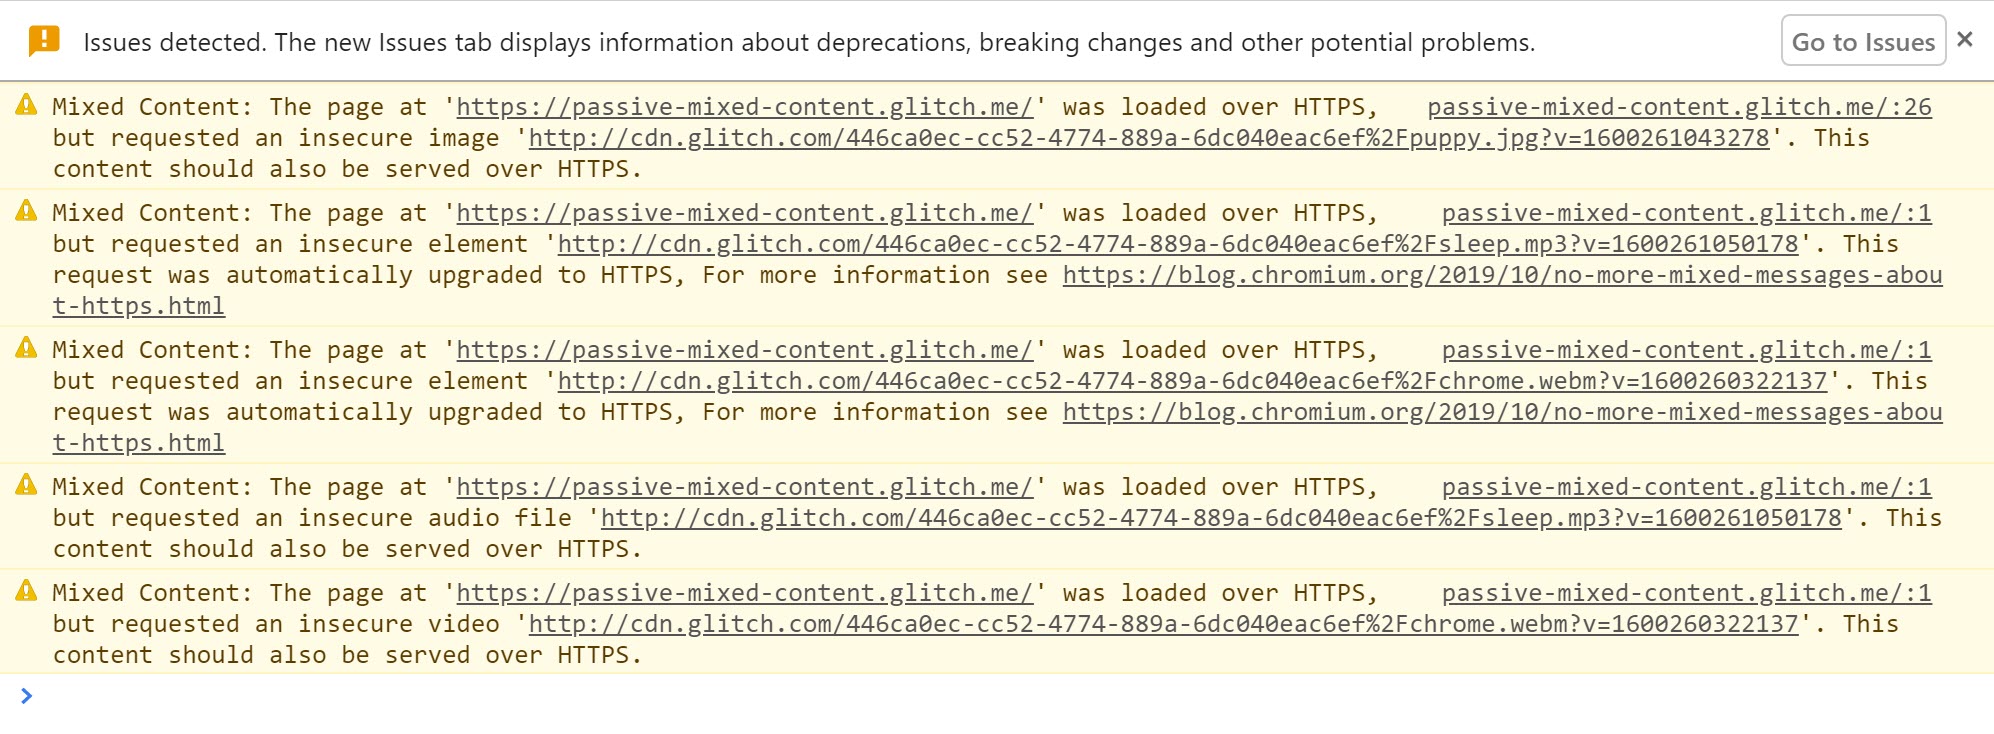 Las Herramientas para desarrolladores de Chrome muestran las advertencias que se muestran cuando se detecta y actualiza contenido mixto